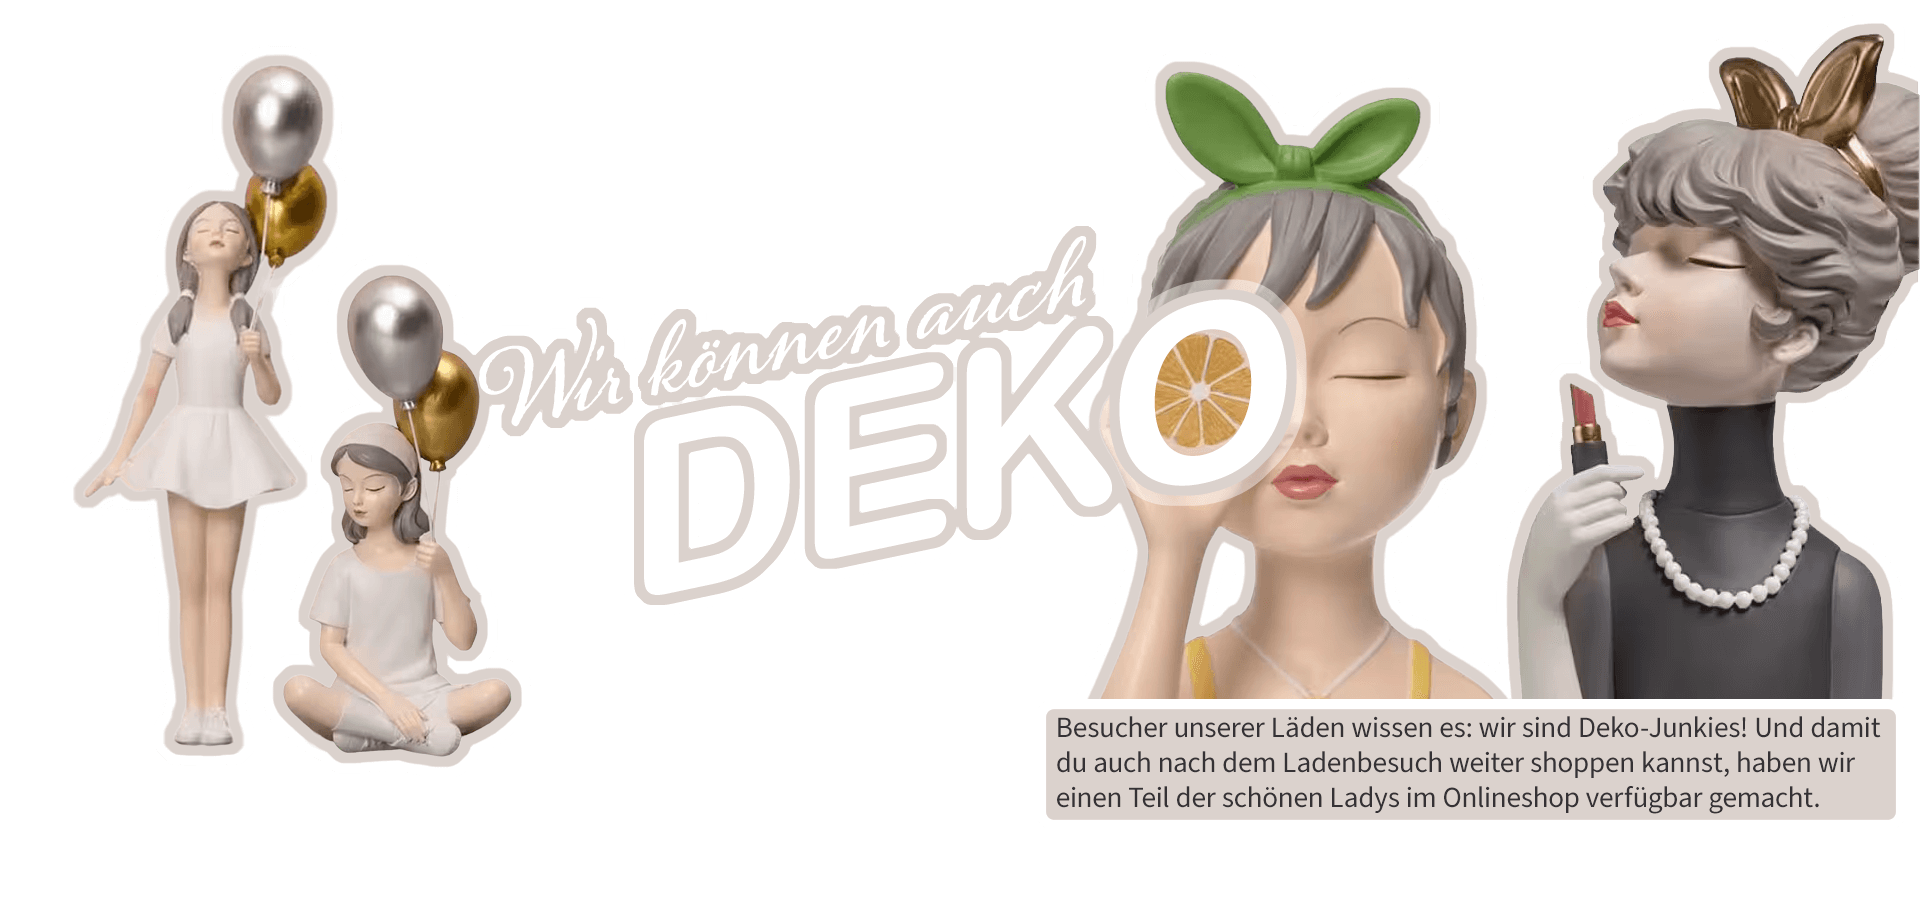 Banner Wolkenseifen Text: Wir können auch Deko! Besucher unserer Läden wissen es: wir sind Deko-Junkies! Und damit du auch nach dem Ladenbesuch weiter shoppen kannst, haben wir einen Teil der schönen Ladys im Onlineshop verfügbar gemacht.